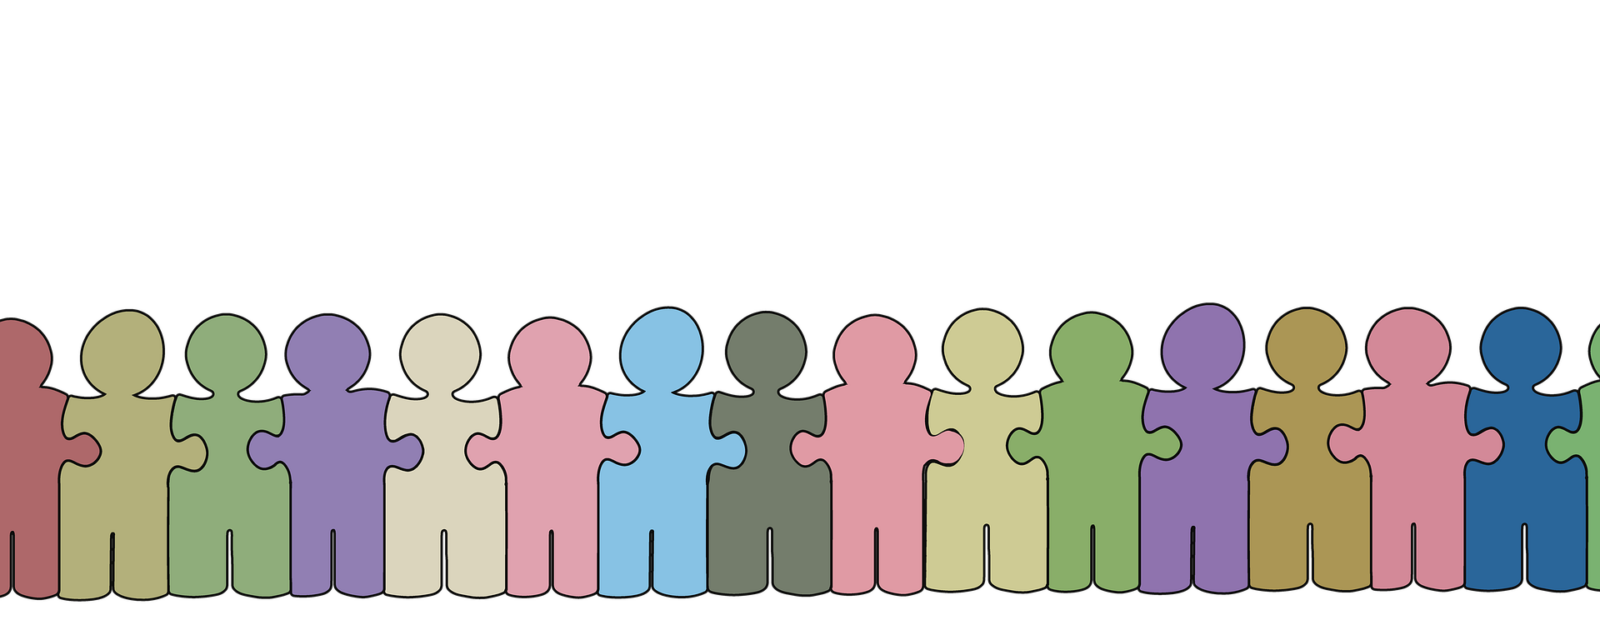 Illustration einer stilisierten Menschenkette, bei der die Personen wie Puzzleteile ineinander greifen